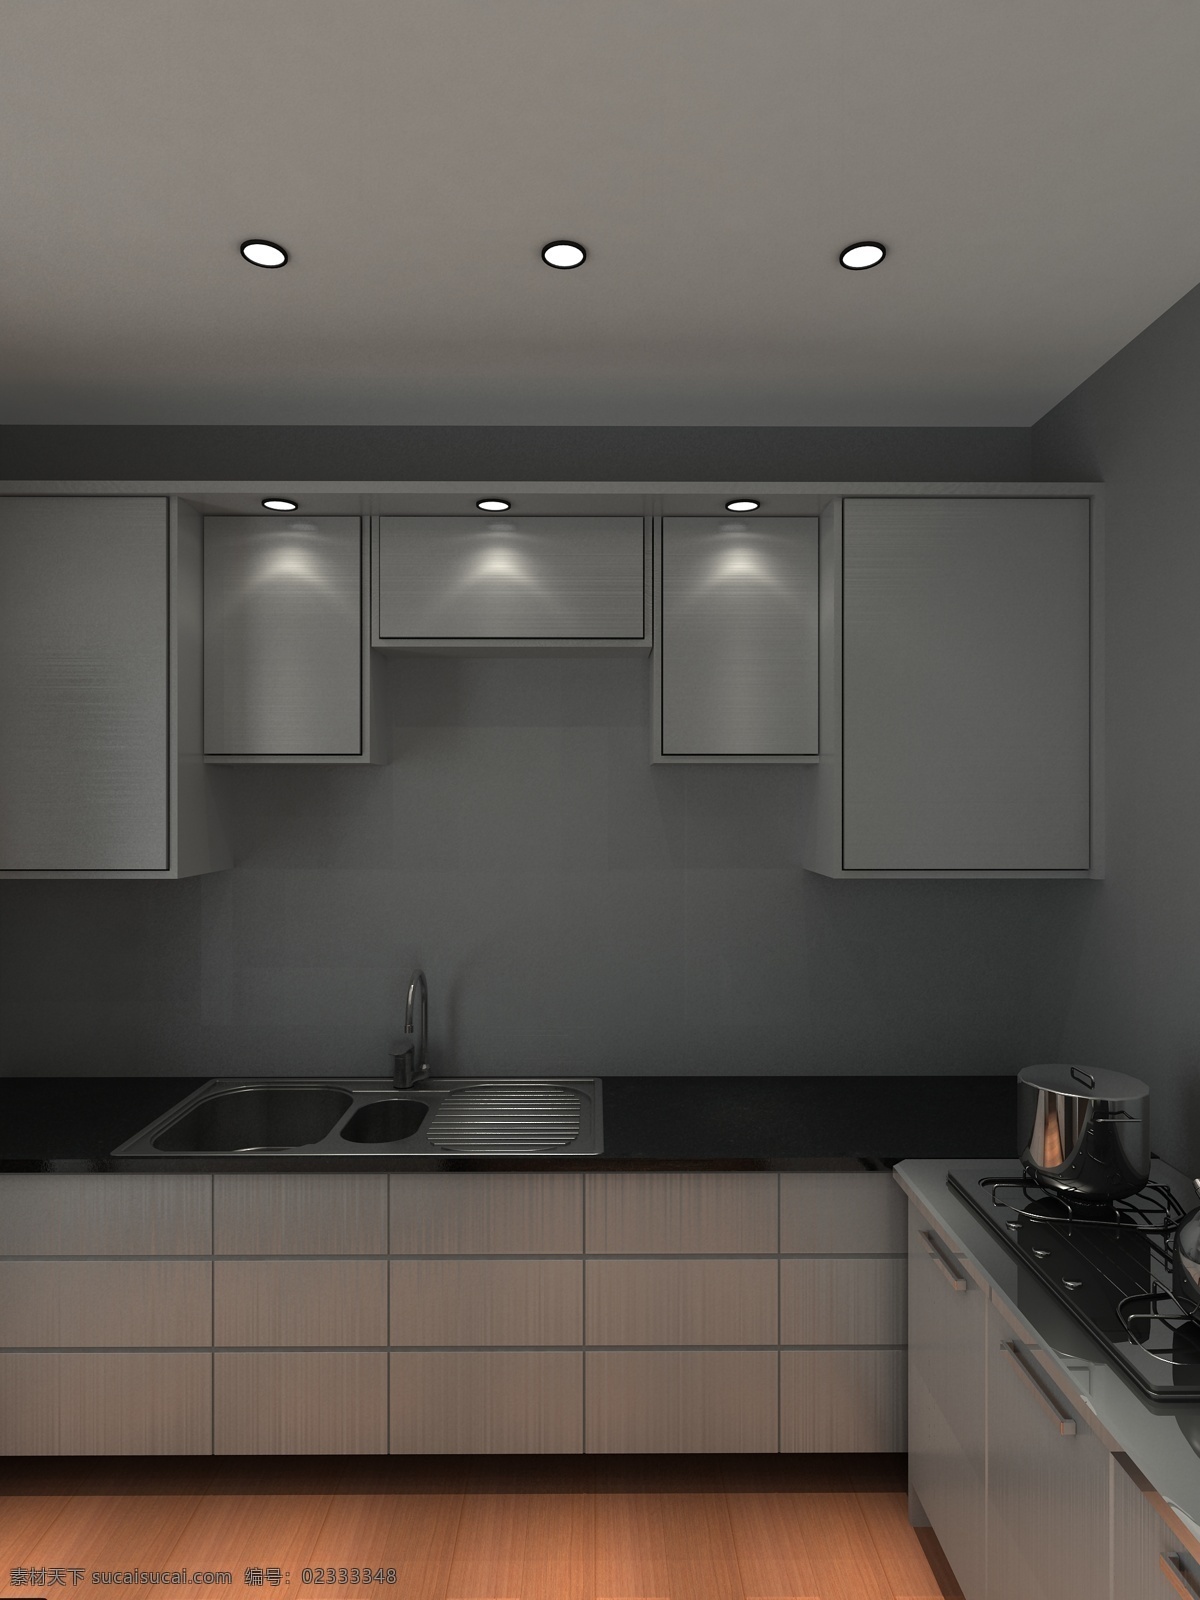 小 空间 厨房 3d 环境设计 室内 室内设计 室内效果图 小空间厨房 小空间 家居装饰素材